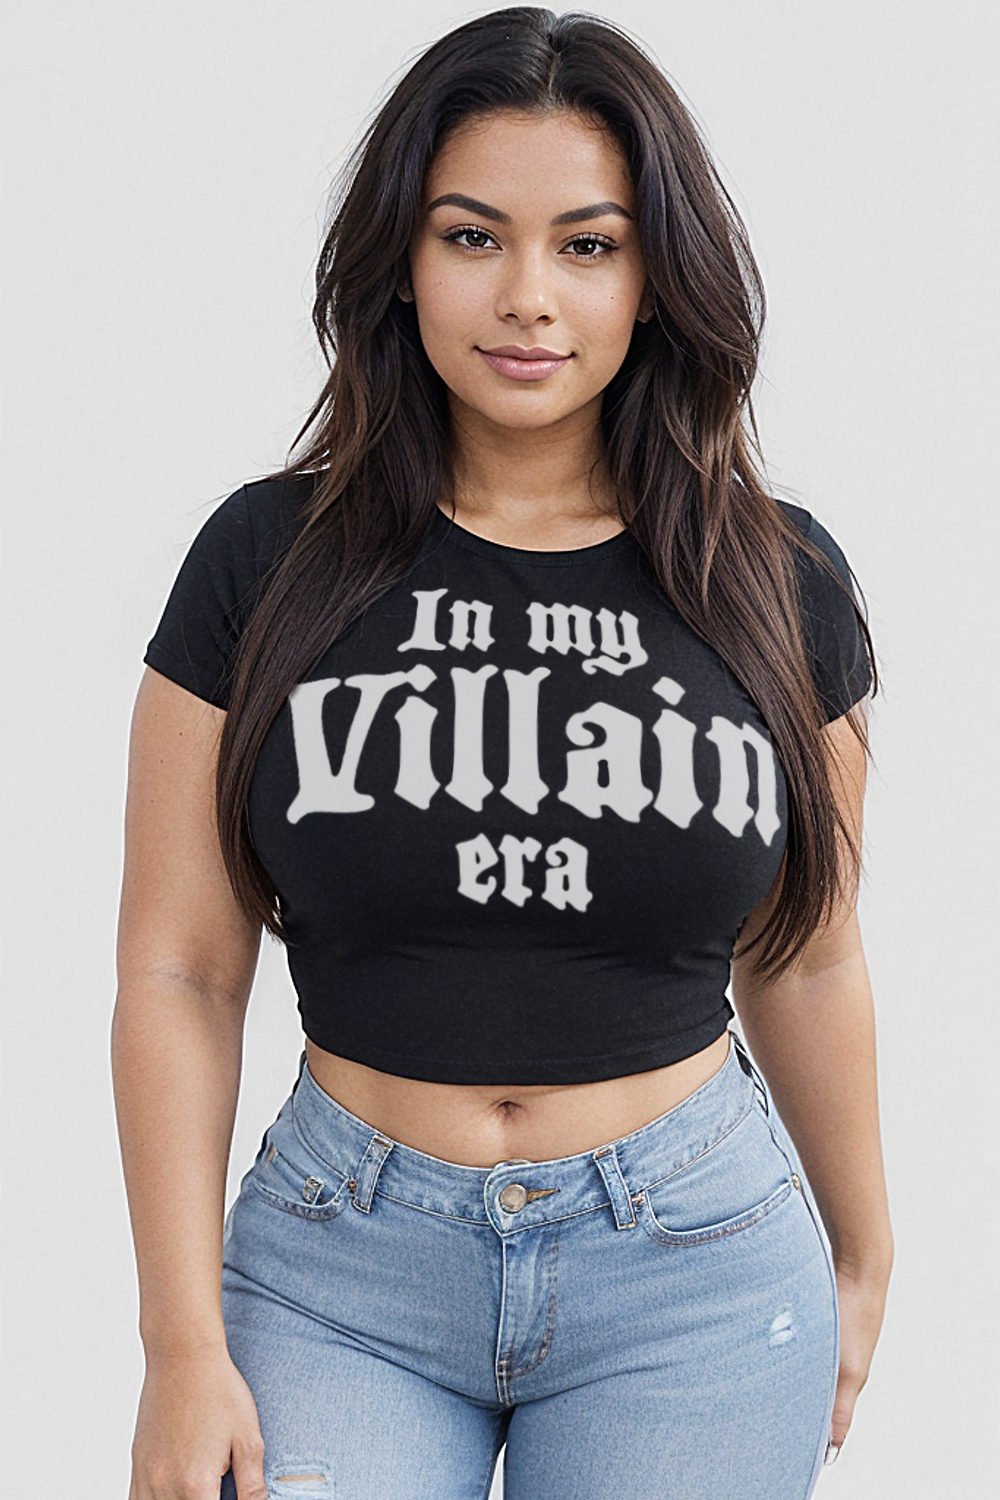 In My Villain Era Women's Fitted Crop Top T-Shirt